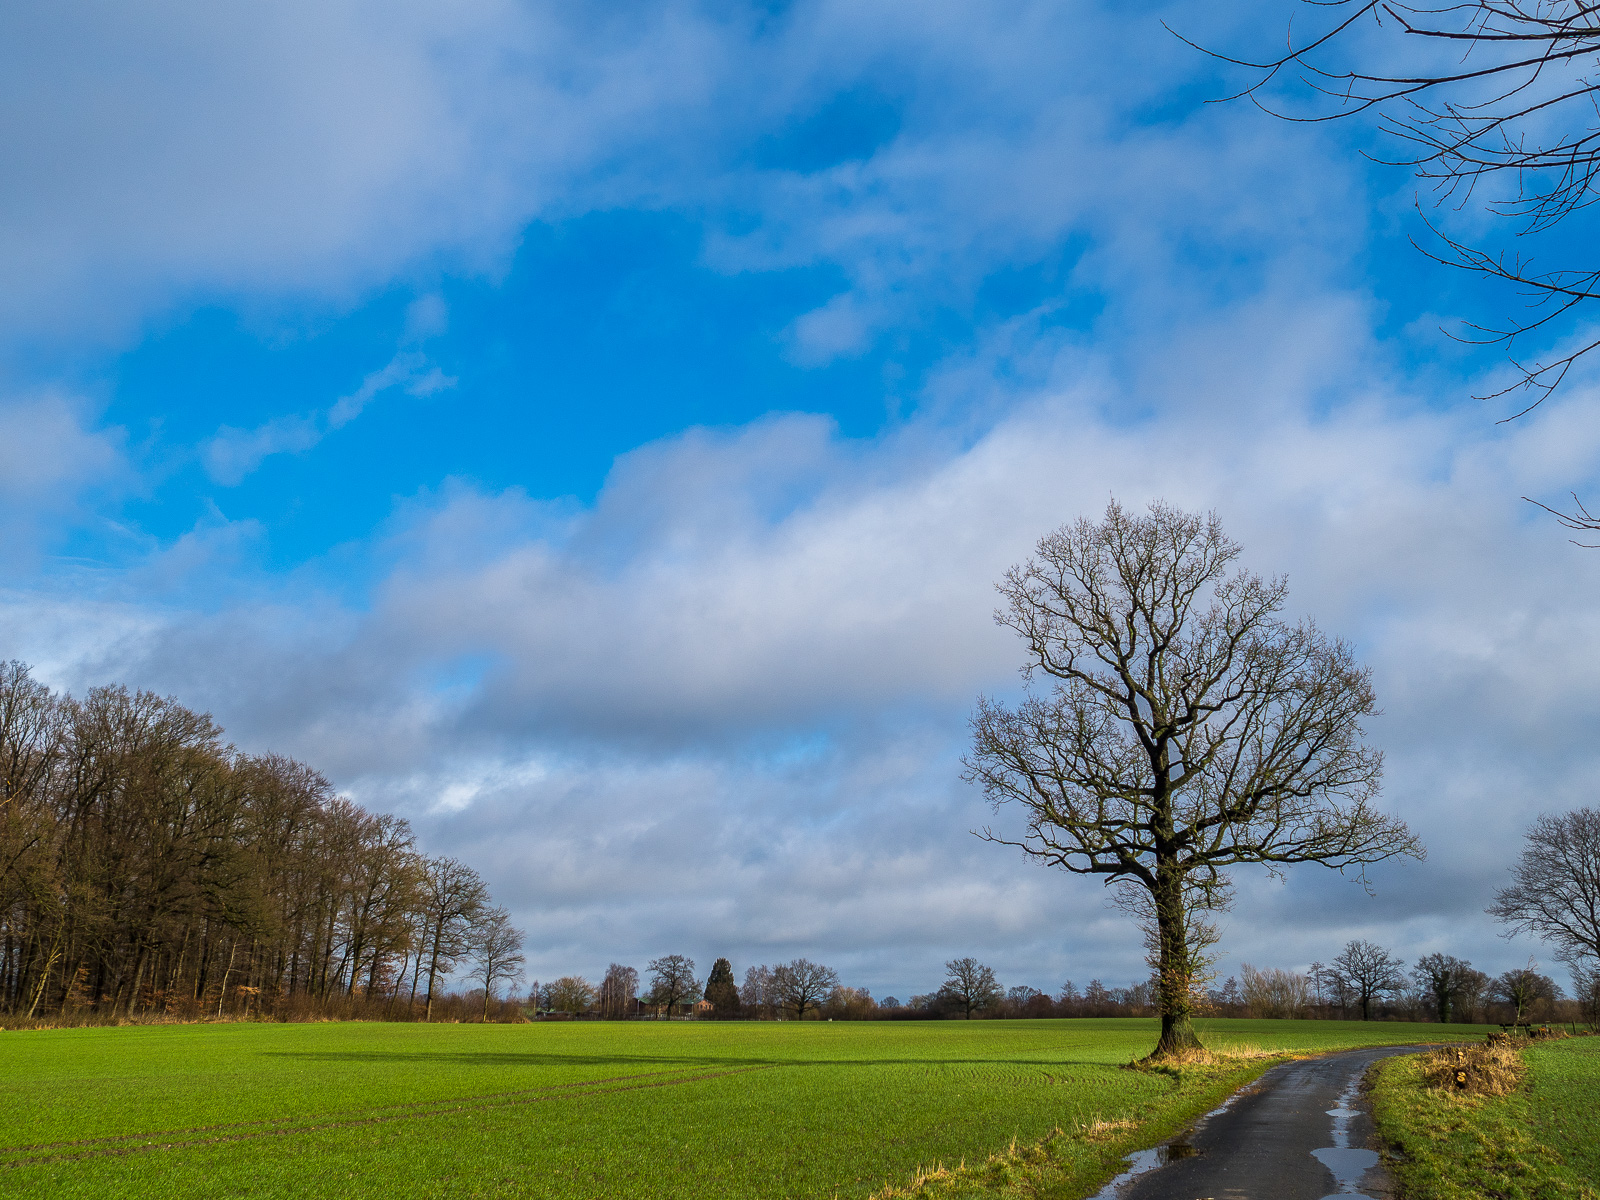 Am rechten Bildrand unten ein Asphaltweg durch eine Wiese, links am Wegrand ein markanter Baum, darüber viel leuchtend blauer Himmel mit weißen und grauen Wolken